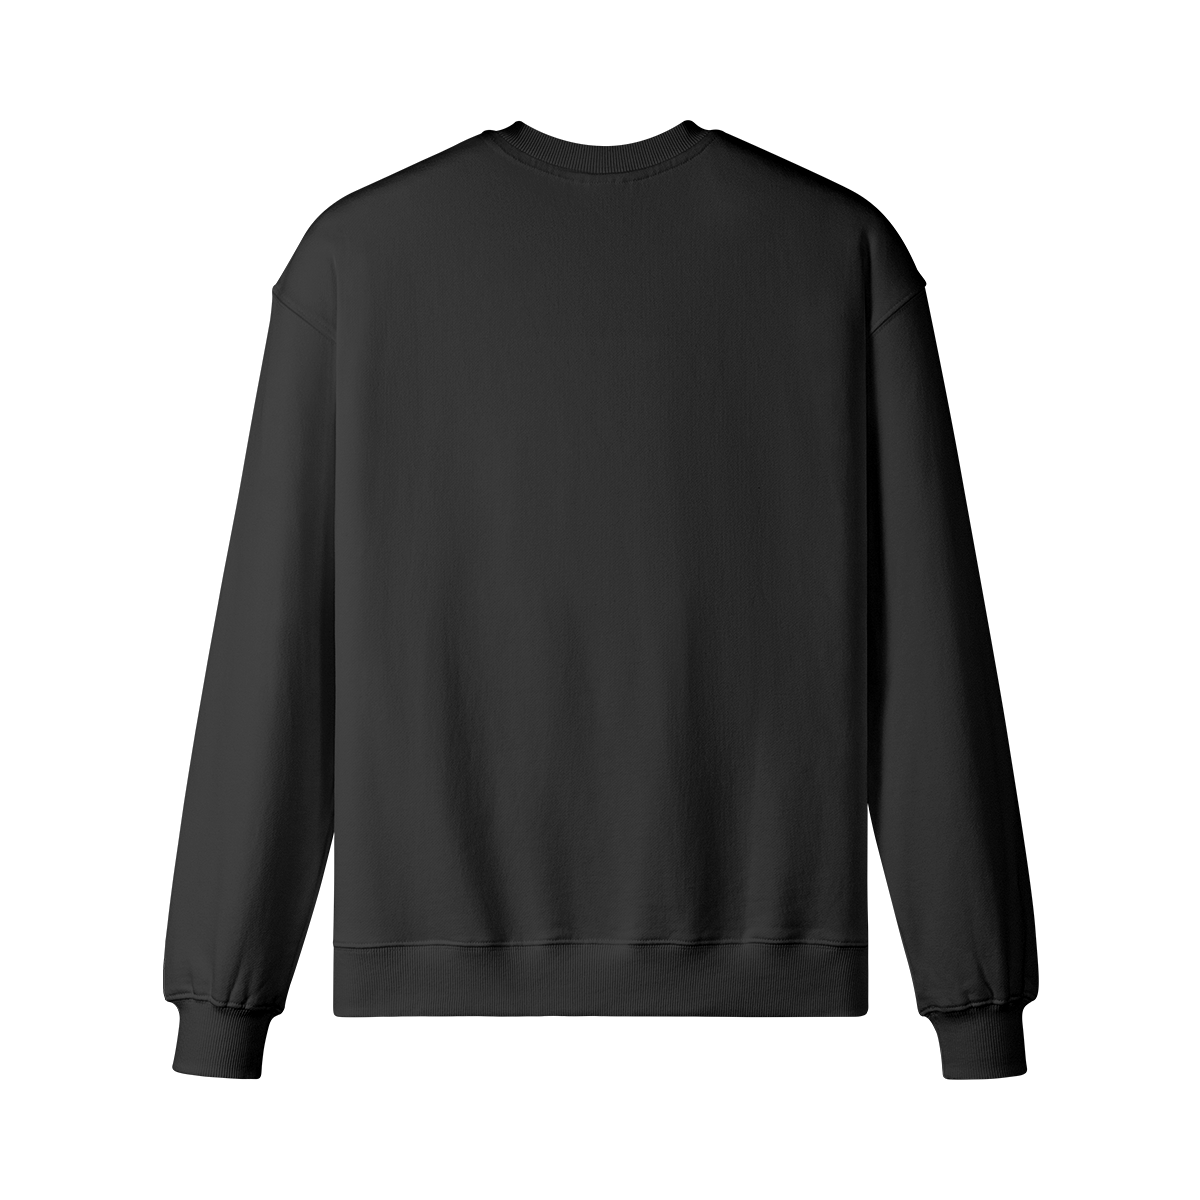 DARKVISION - Unisex Oversized Sweatshirt - black - back